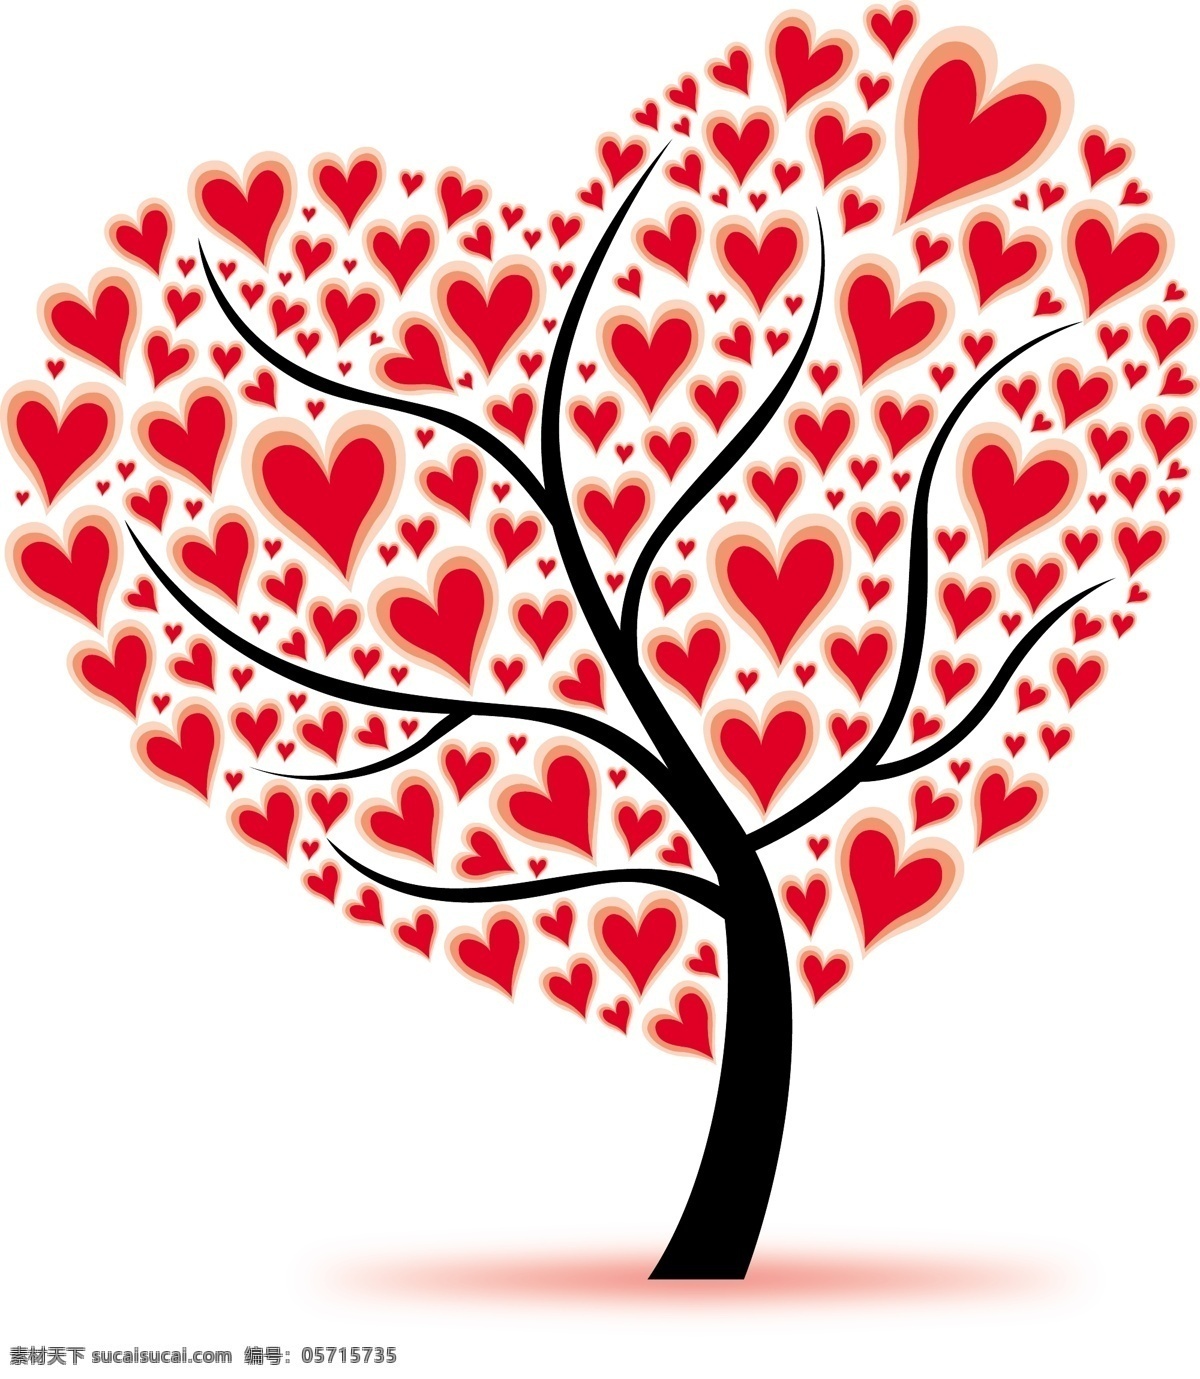 精美 爱 心树 矢量 爱心 彩绘 红心 卡通 矢量图 手绘 树 植物 其他矢量图